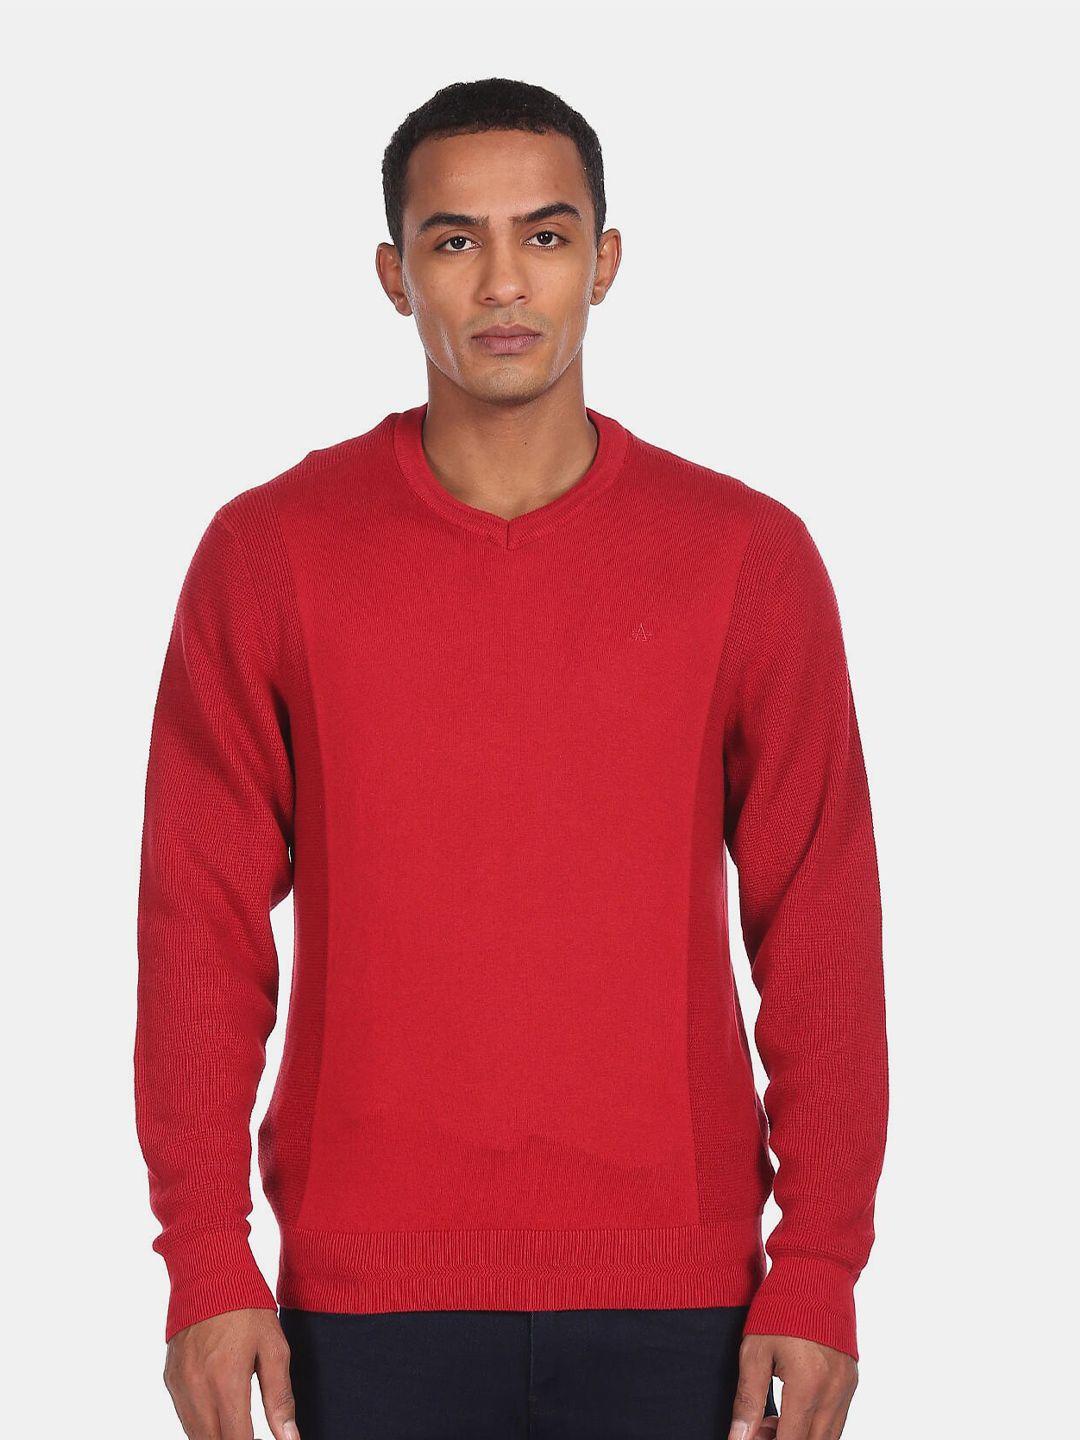 arrow sport men red sweaters